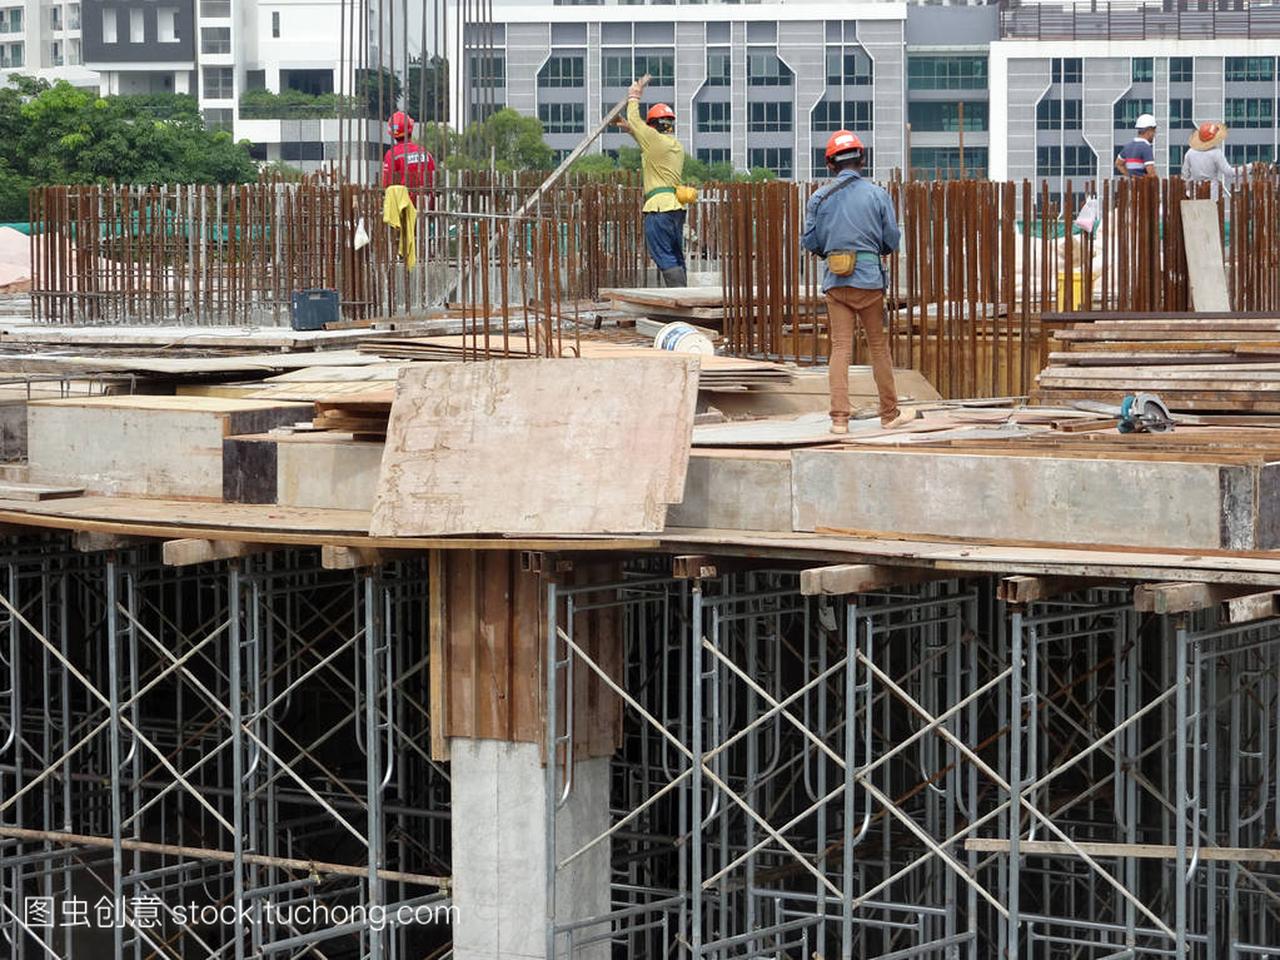 吉隆坡, 马来西亚-2017年7月07日: 建筑工人在